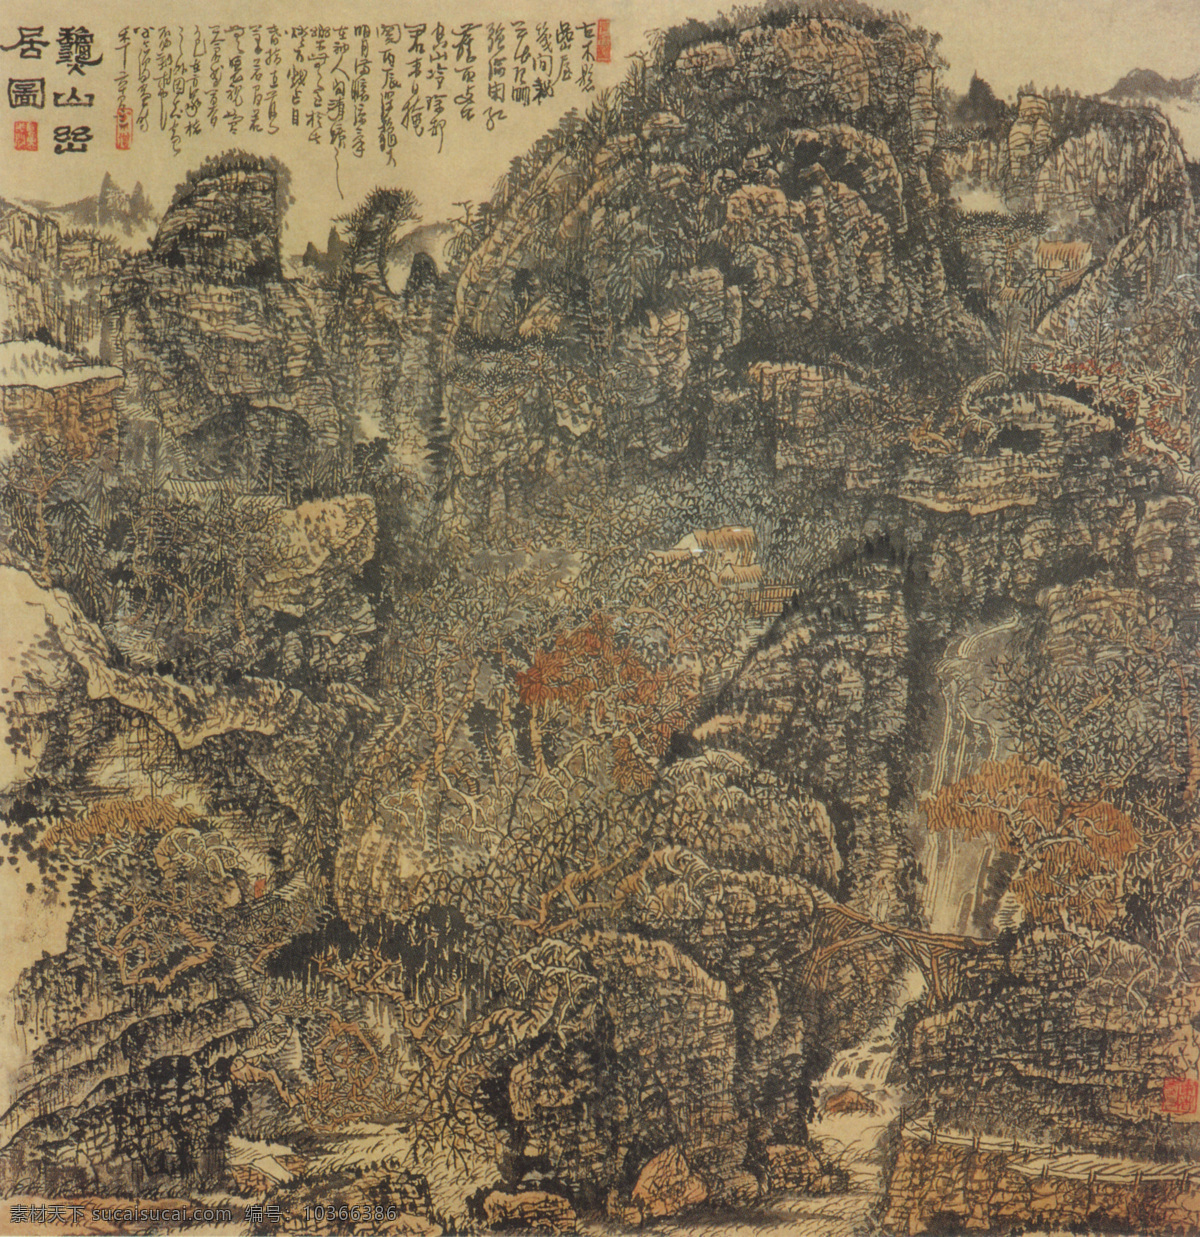 秋山 出 居 图 传统 水墨 山水 丹青 山林 中国 现代 篇 文化艺术 绘画书法